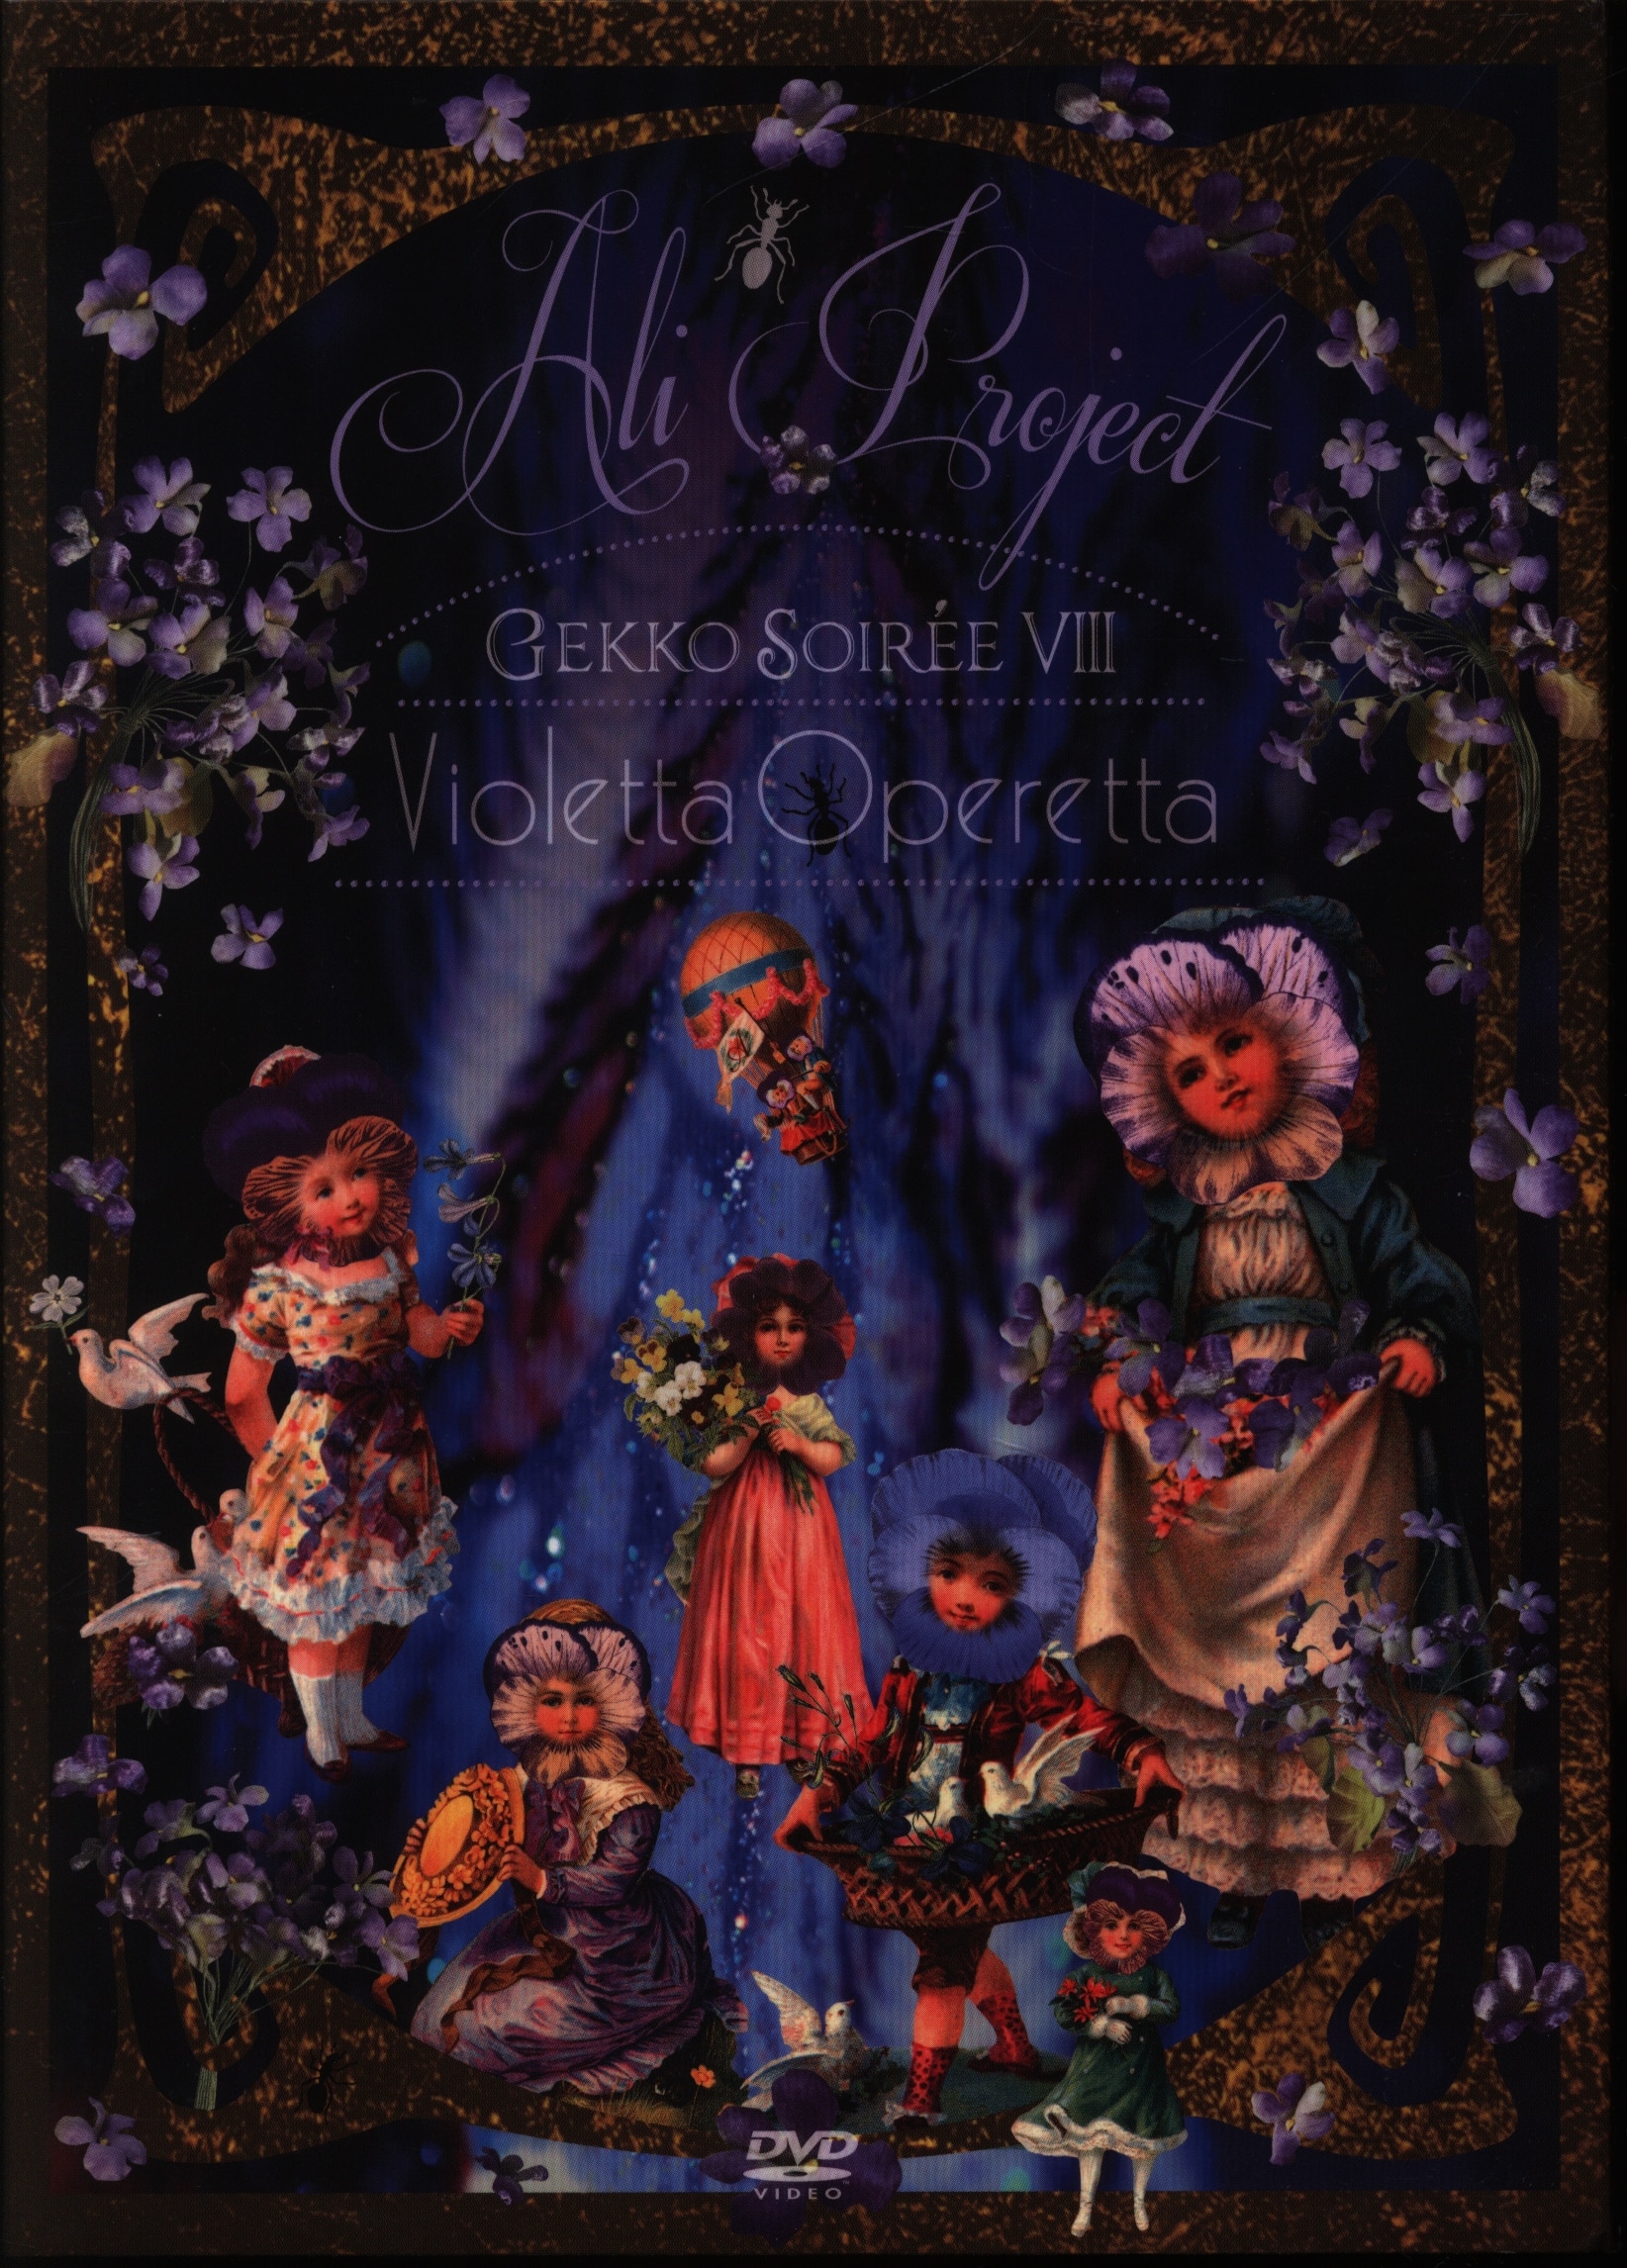 Live DVD ALI PROJECT Moonlight Soiree VIII Violetta Operetta